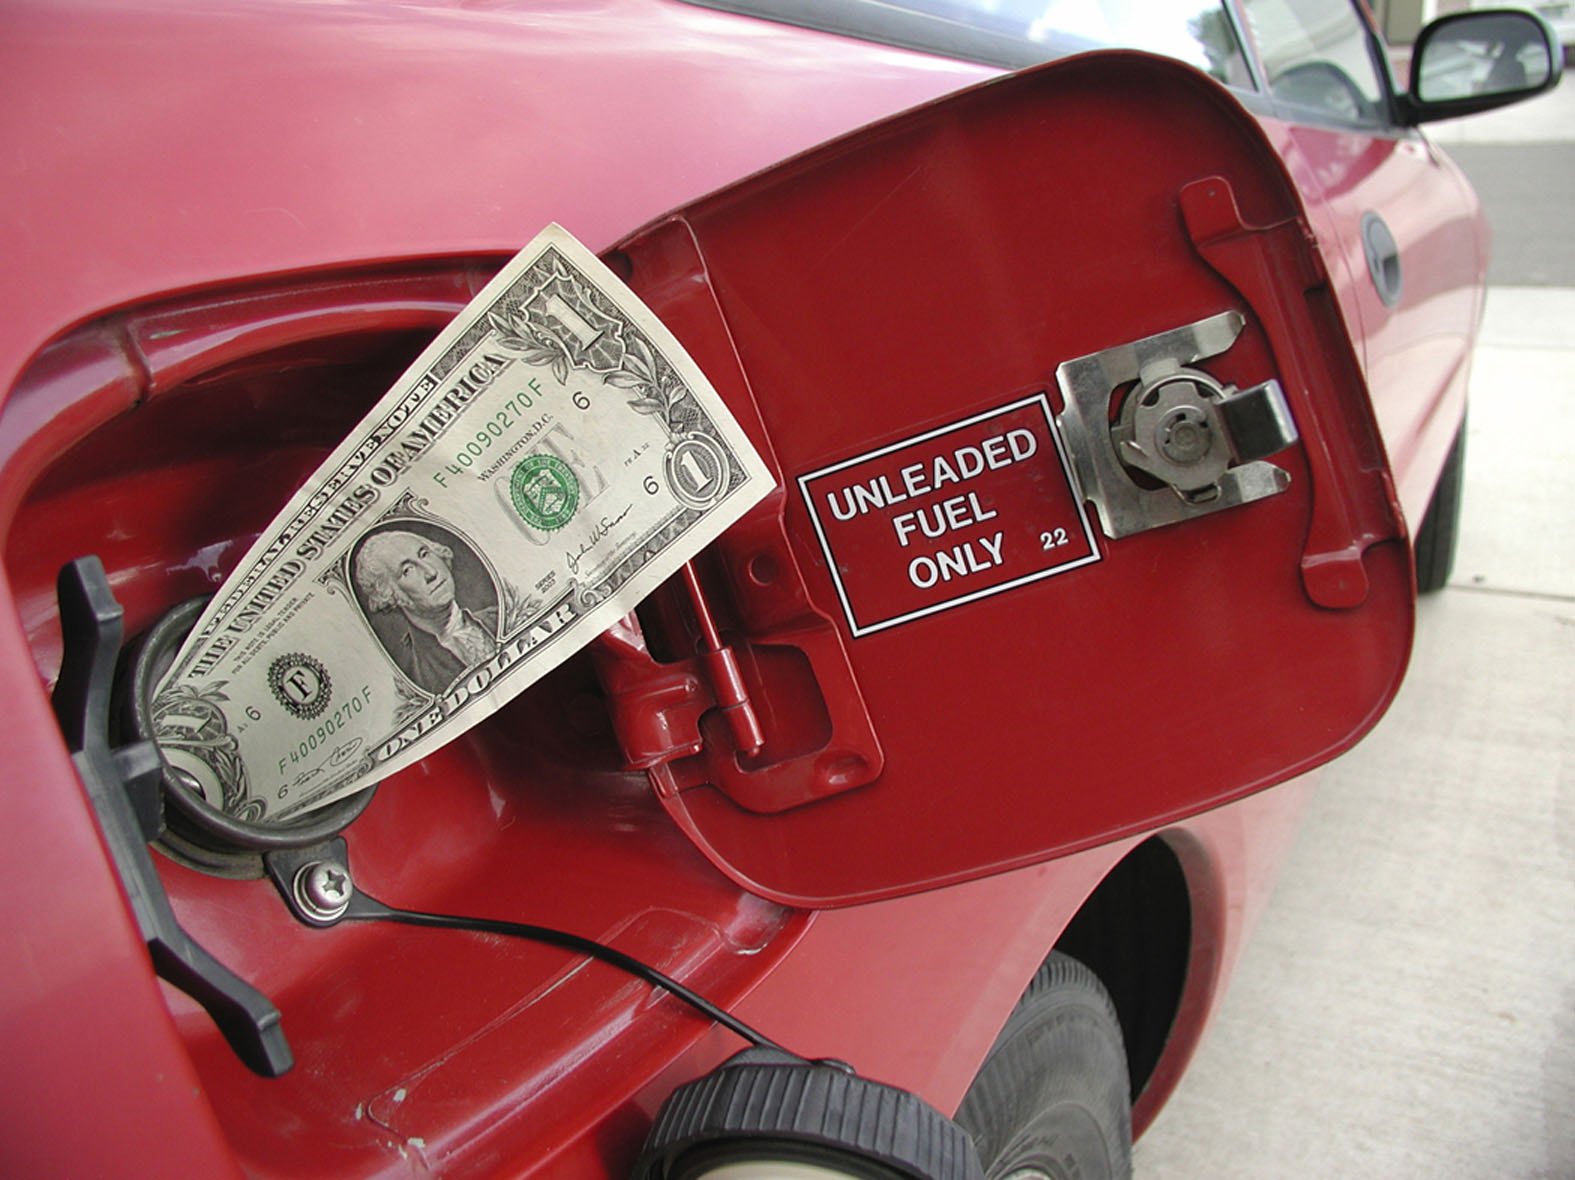 ค่าน้ำมันเป็นค่าใช้จ่ายรายเดือนที่คุณจำเป็นต้องเสียเมื่อมีรถ